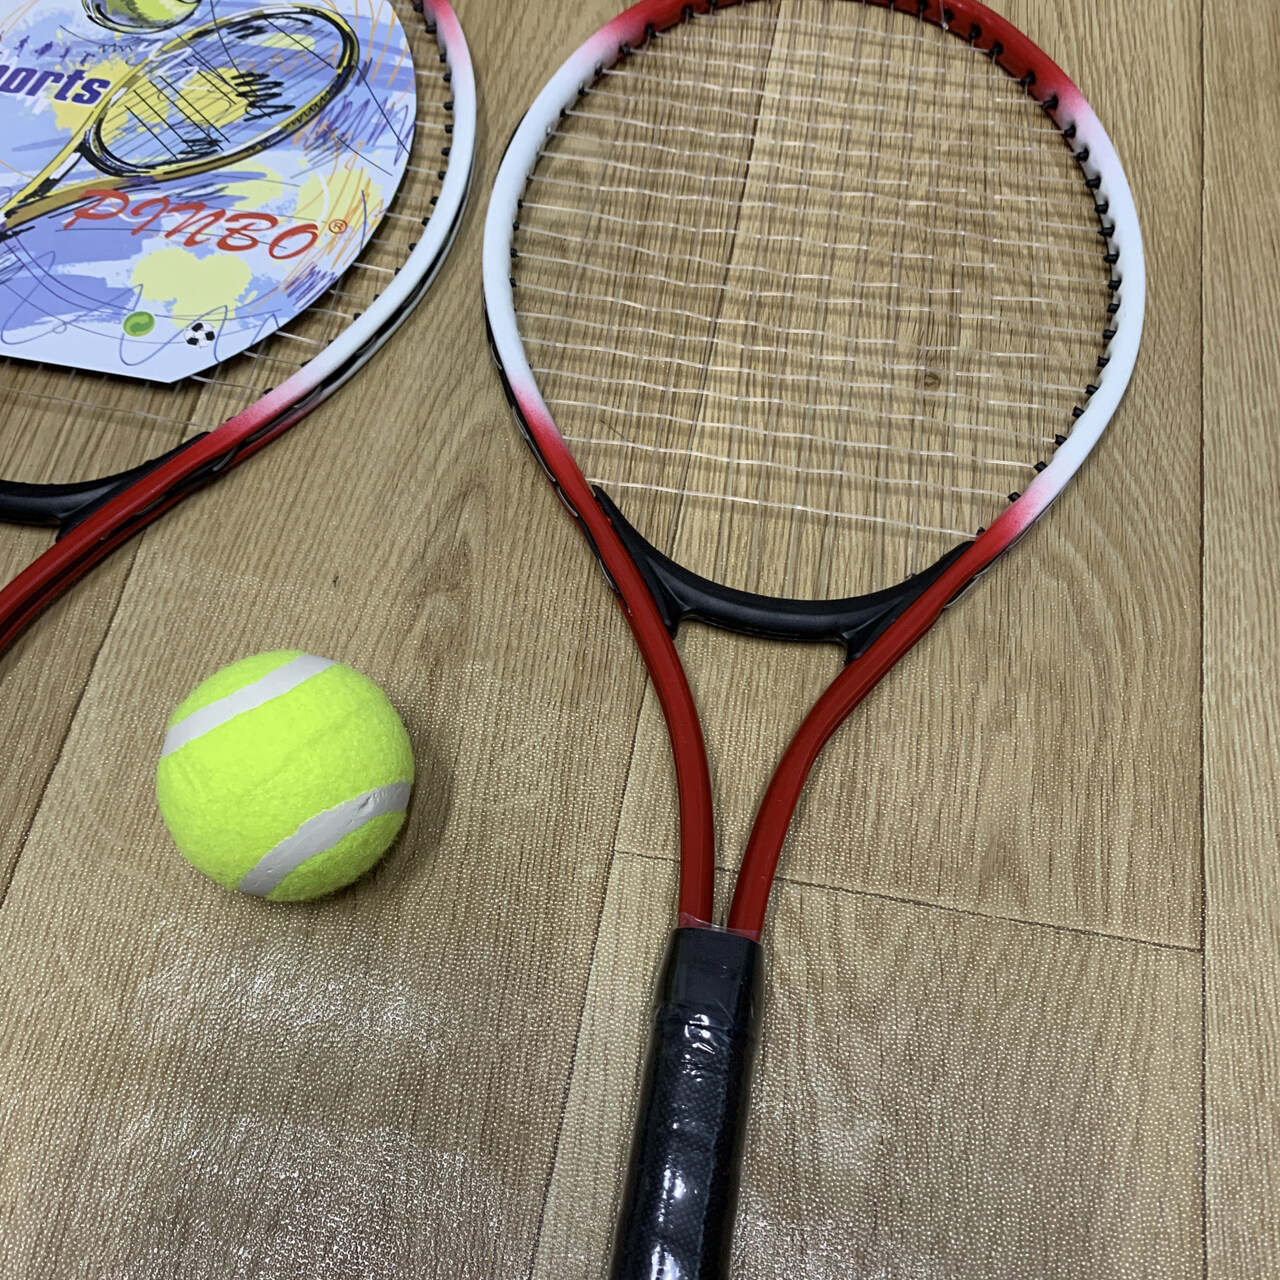 ภาพประกอบของ ZXK - Tennis ไม้เทนนิส 2 ชิ้น พร้อมลูกเทนนิส 1 ลูก สำหรับเด็ก